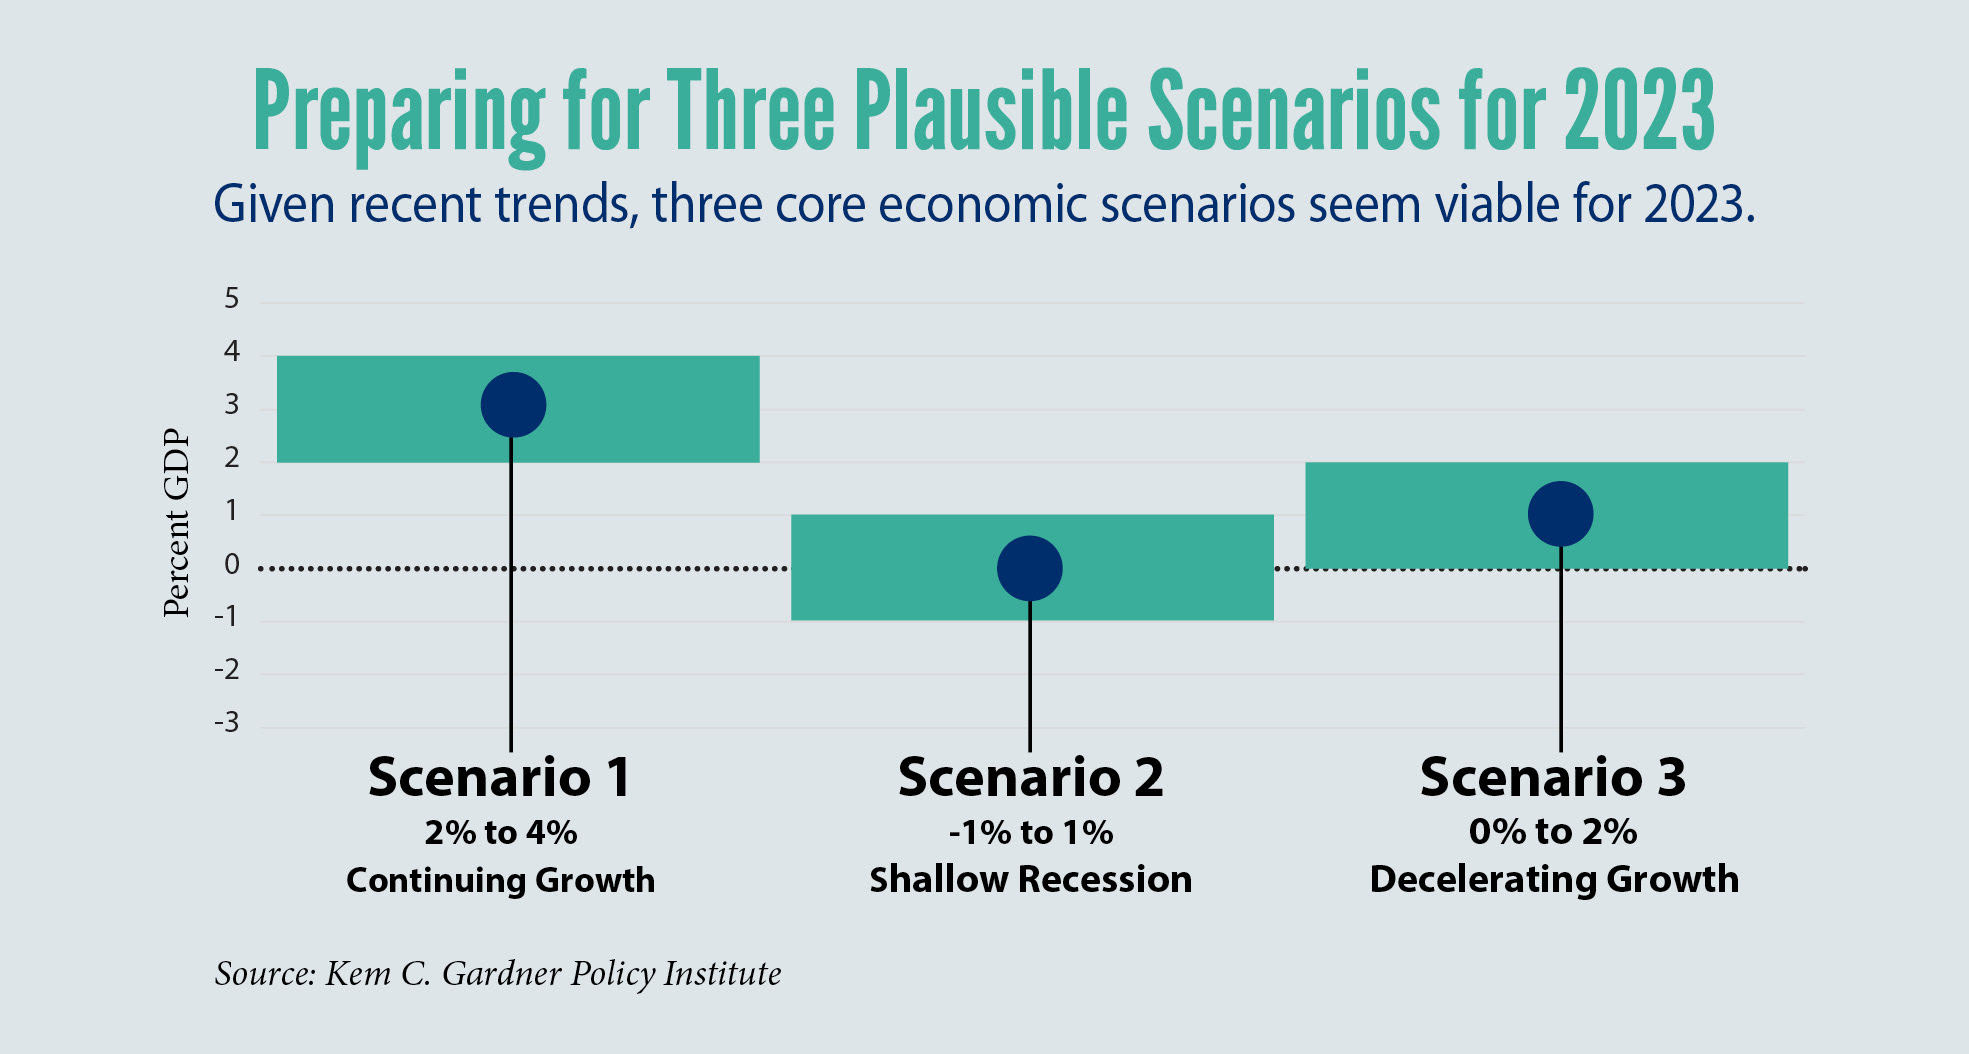 Preparing for Three Plausible Scenarios for 2023. Scenario 1: 2% to 4% Continuing Growth. Scenario 2: -1% to 1% Shallow Recession. Scenario 3: 0% to 2% Decelerating Growth.